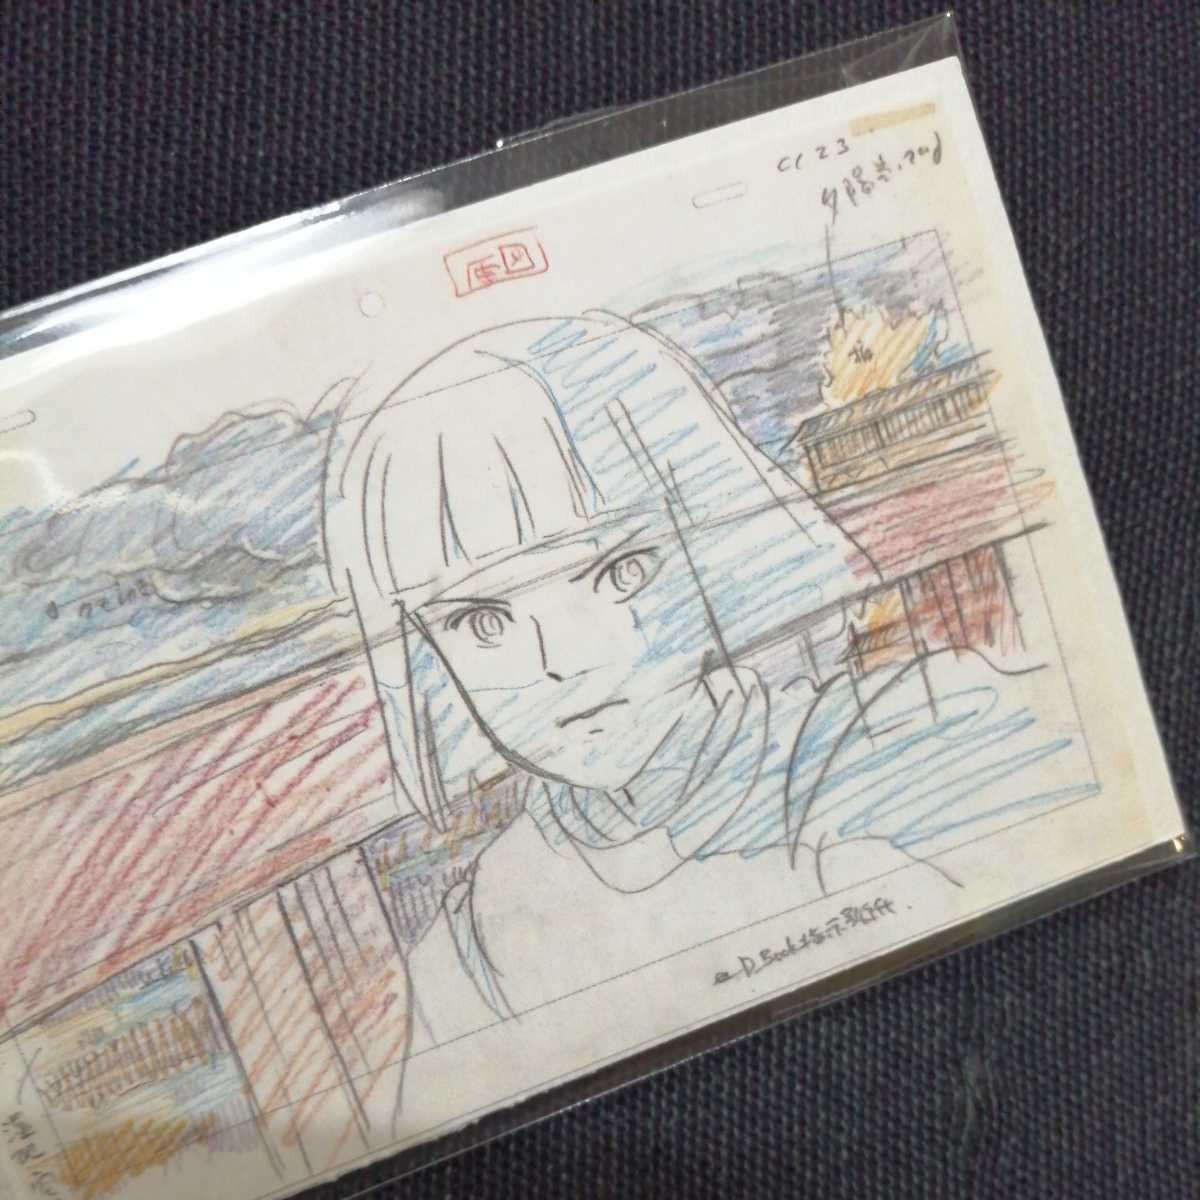  Studio Ghibli тысяч . тысяч .. бог .. расположение порез . карта осмотр ) Ghibli. открытка. постер исходная картина цифровая картинка расположение выставка Miyazaki .